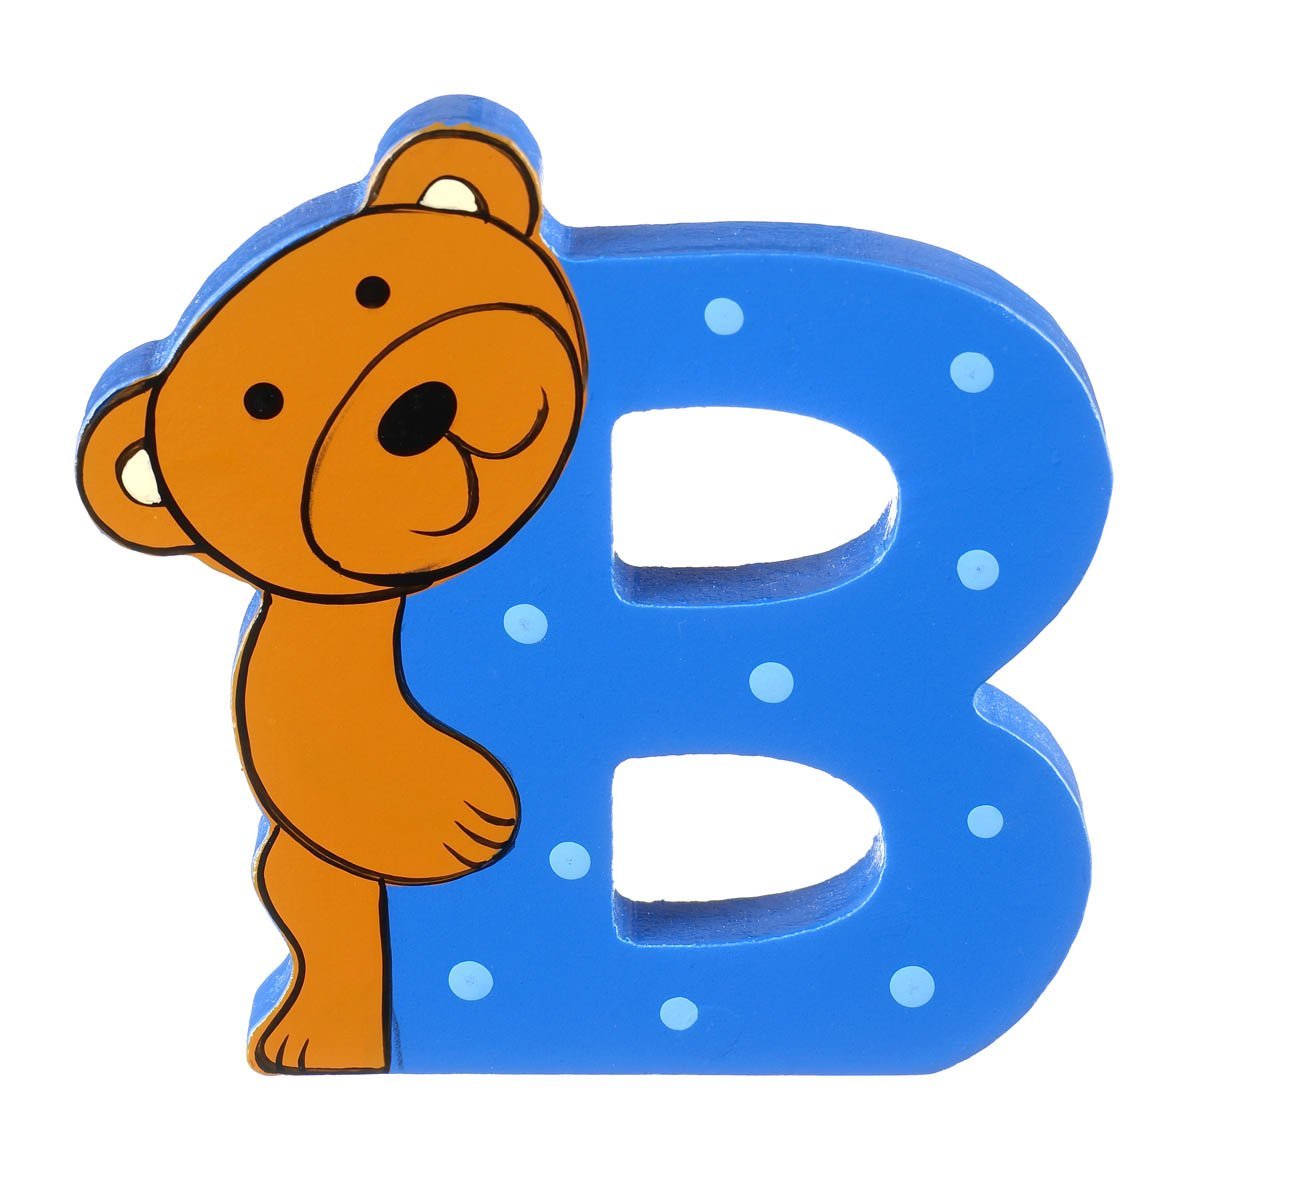 Буква b для дошкольников